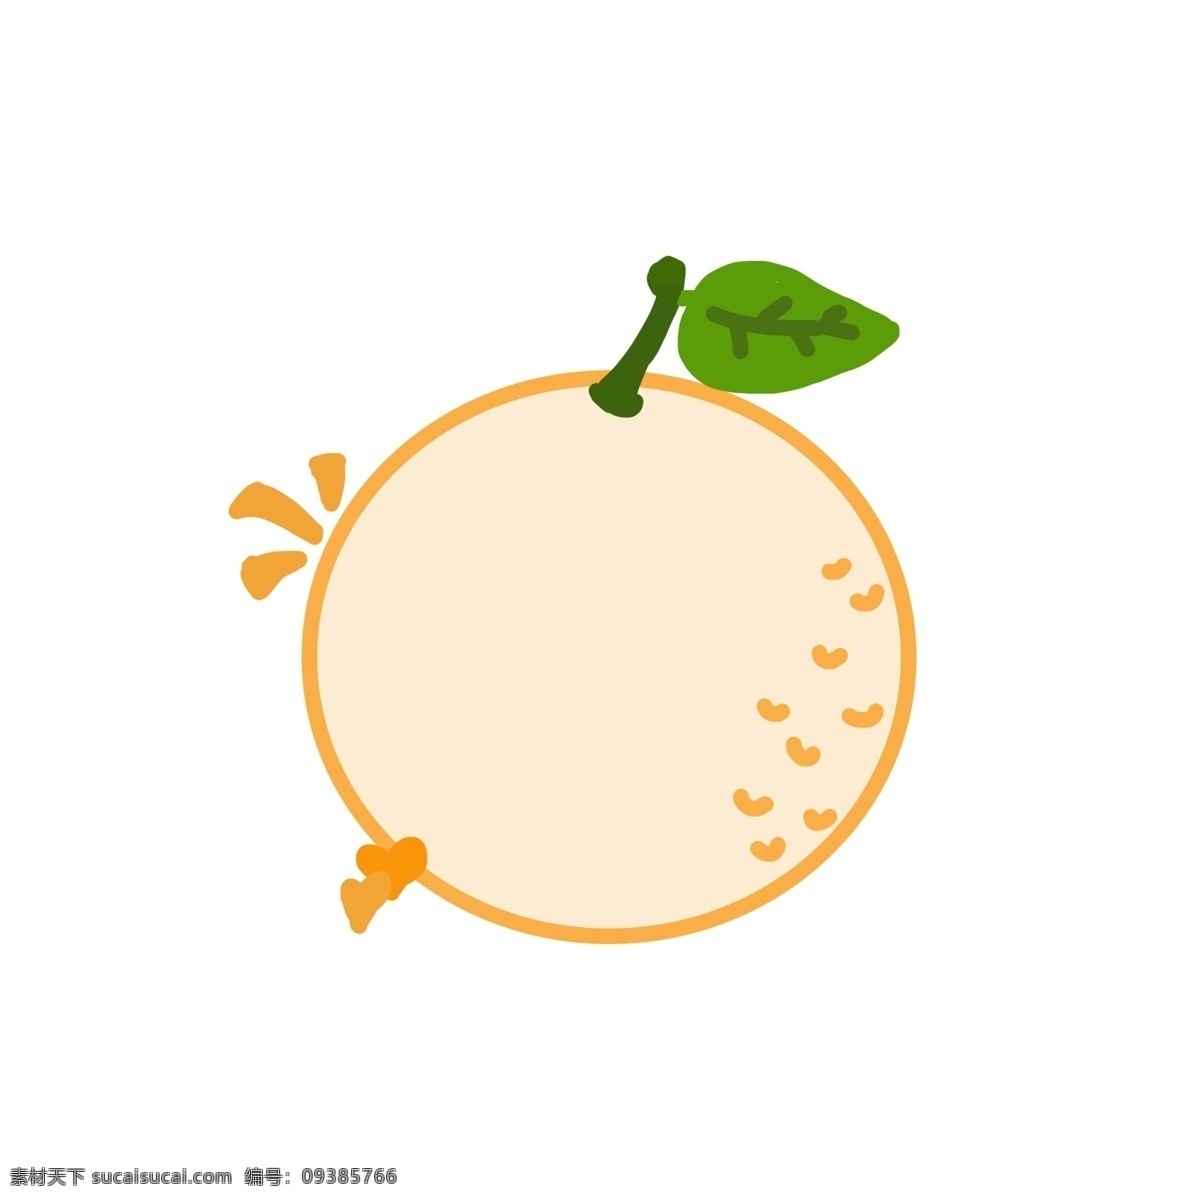 手绘 卡通 橙子 水果 对话框 边框 商用 元素 元素图标